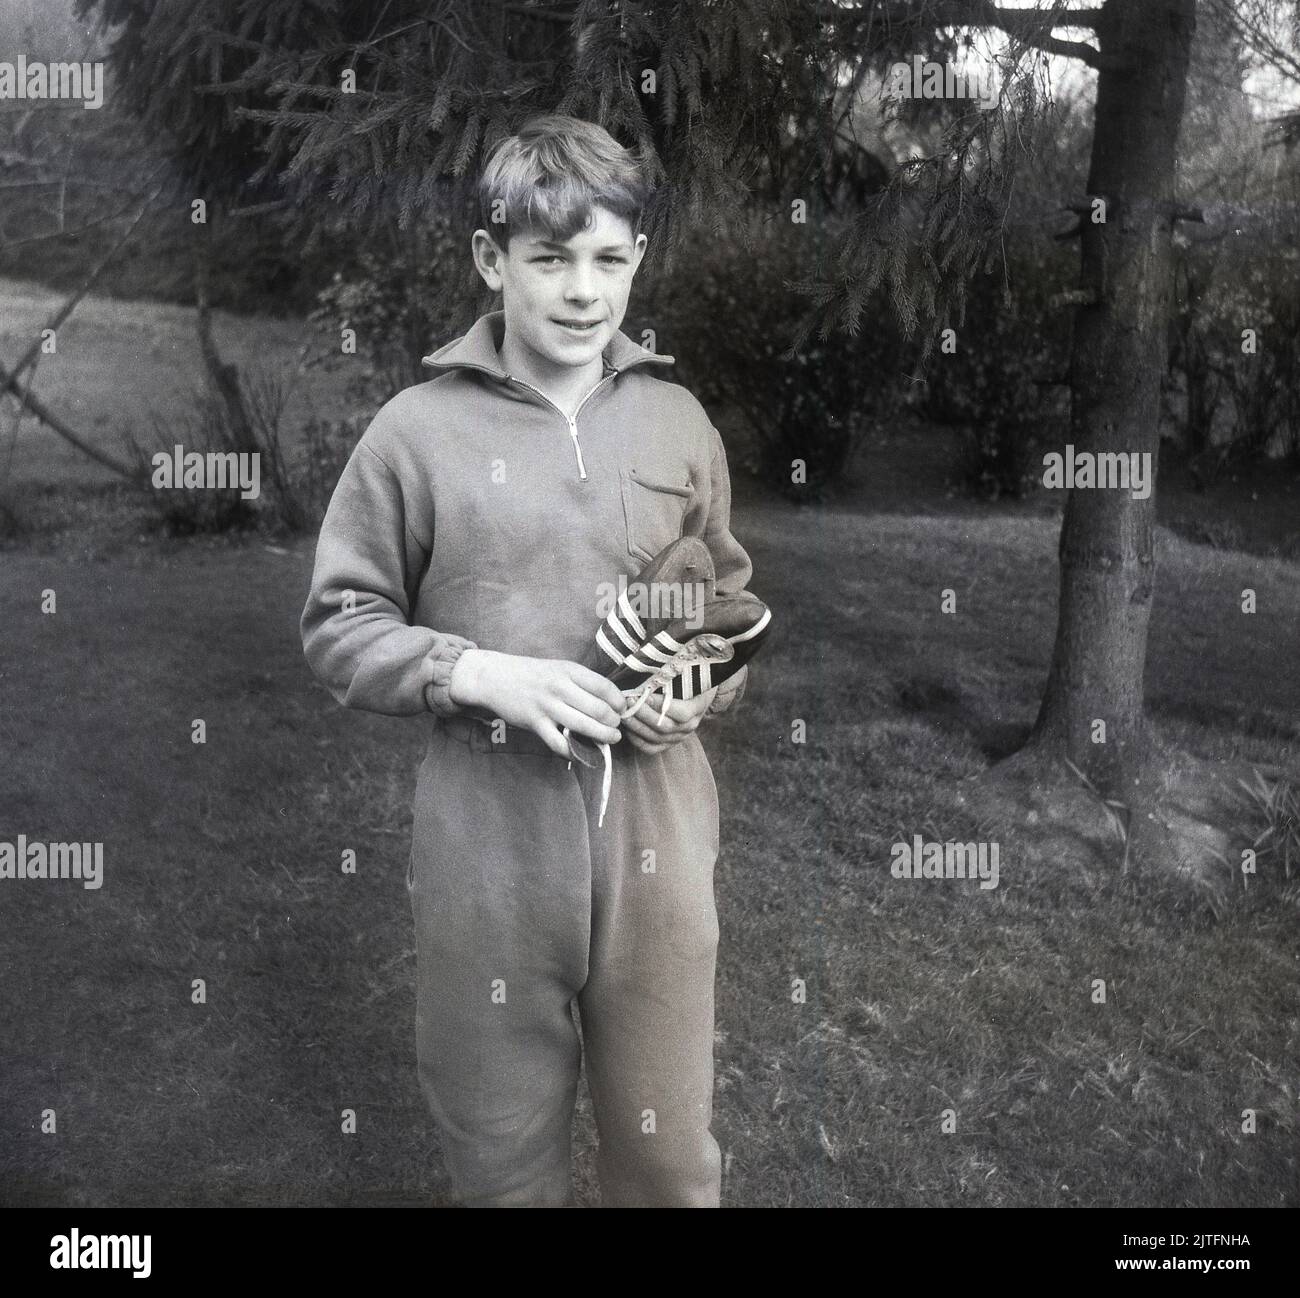 1962, storico, in piedi fuori, un adolescente in una tuta di cotone dell'epoca, tenendo scarpe da corsa pista, noto come a Spikes, Inghilterra, Regno Unito Foto Stock